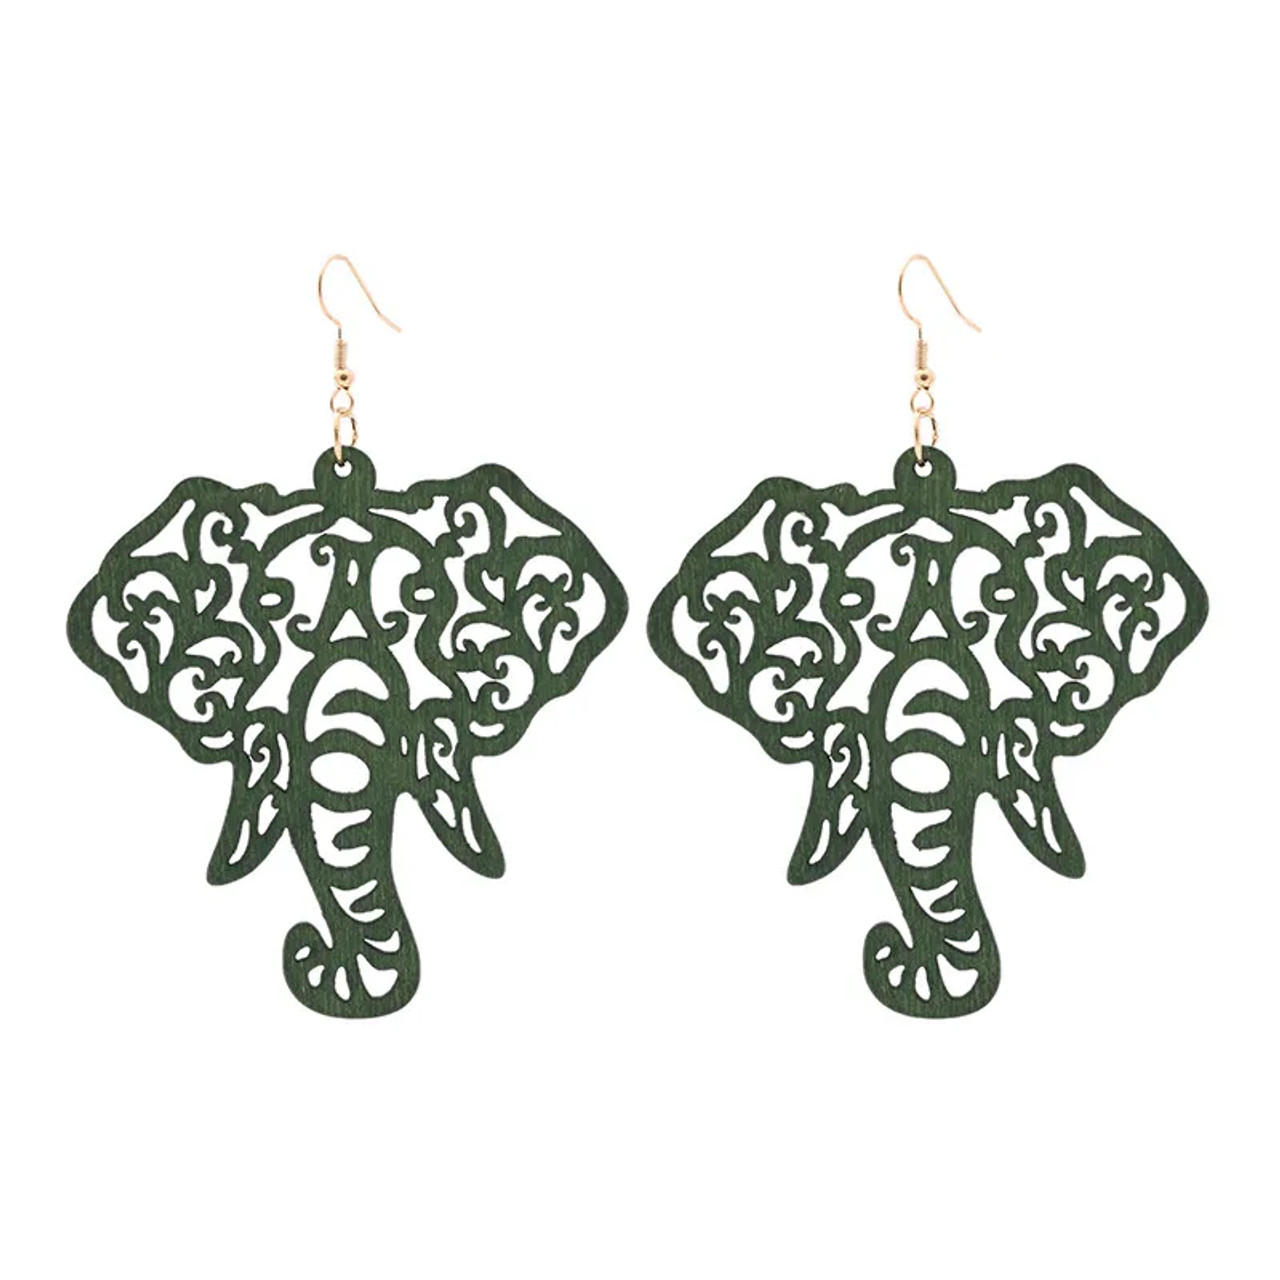 EARRING BLANKS - Elephant Strength Earrings - WOOD Earring